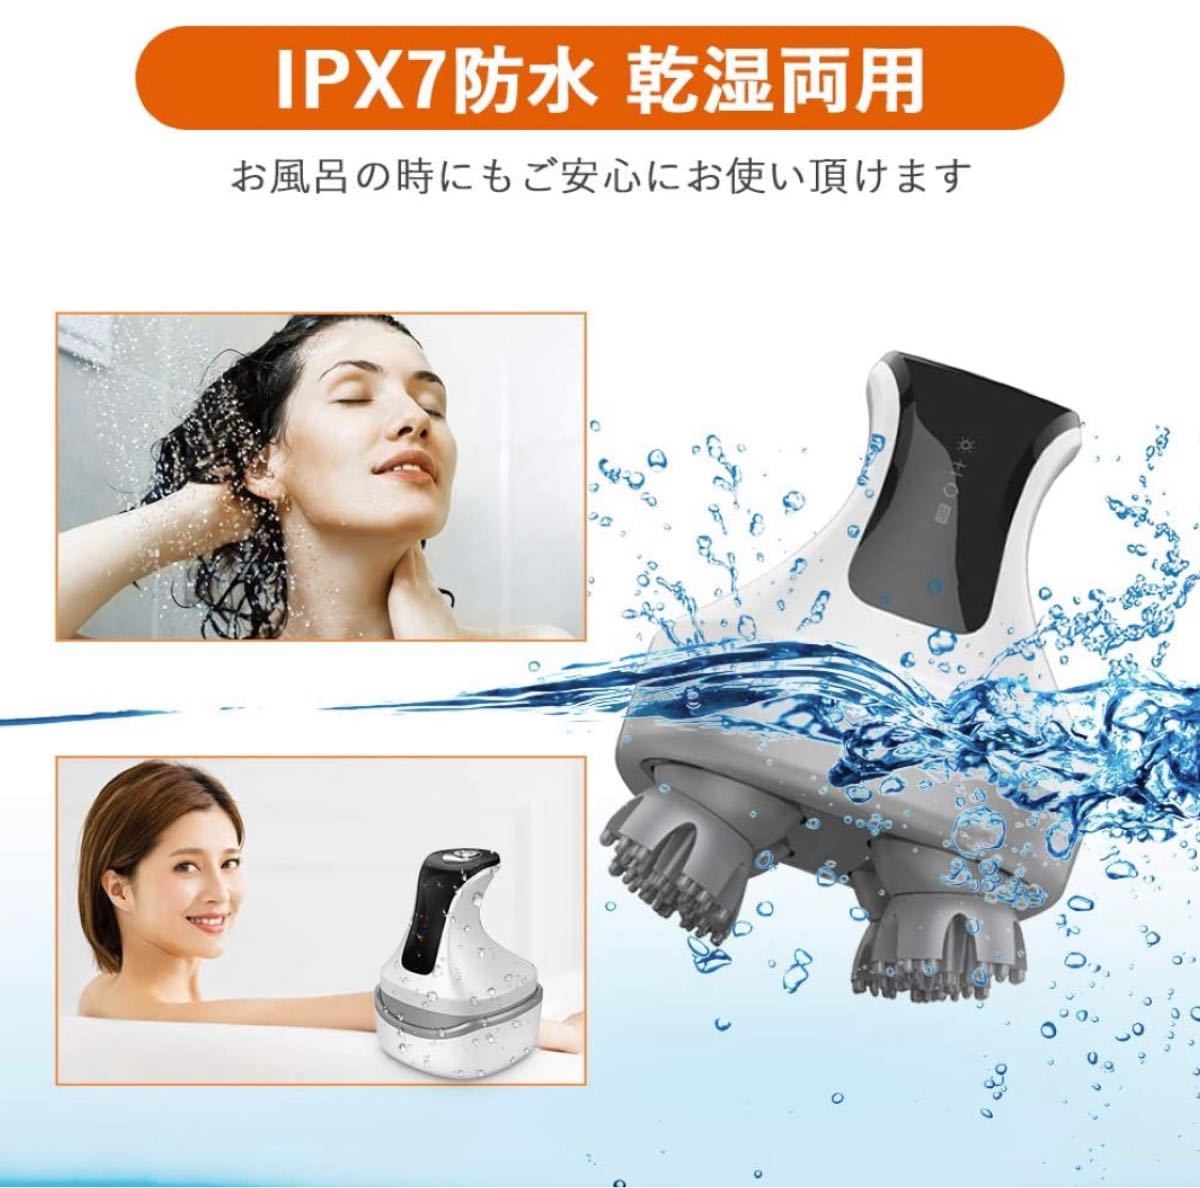 電動頭皮ブラシ 振動モード付き IPX7防水